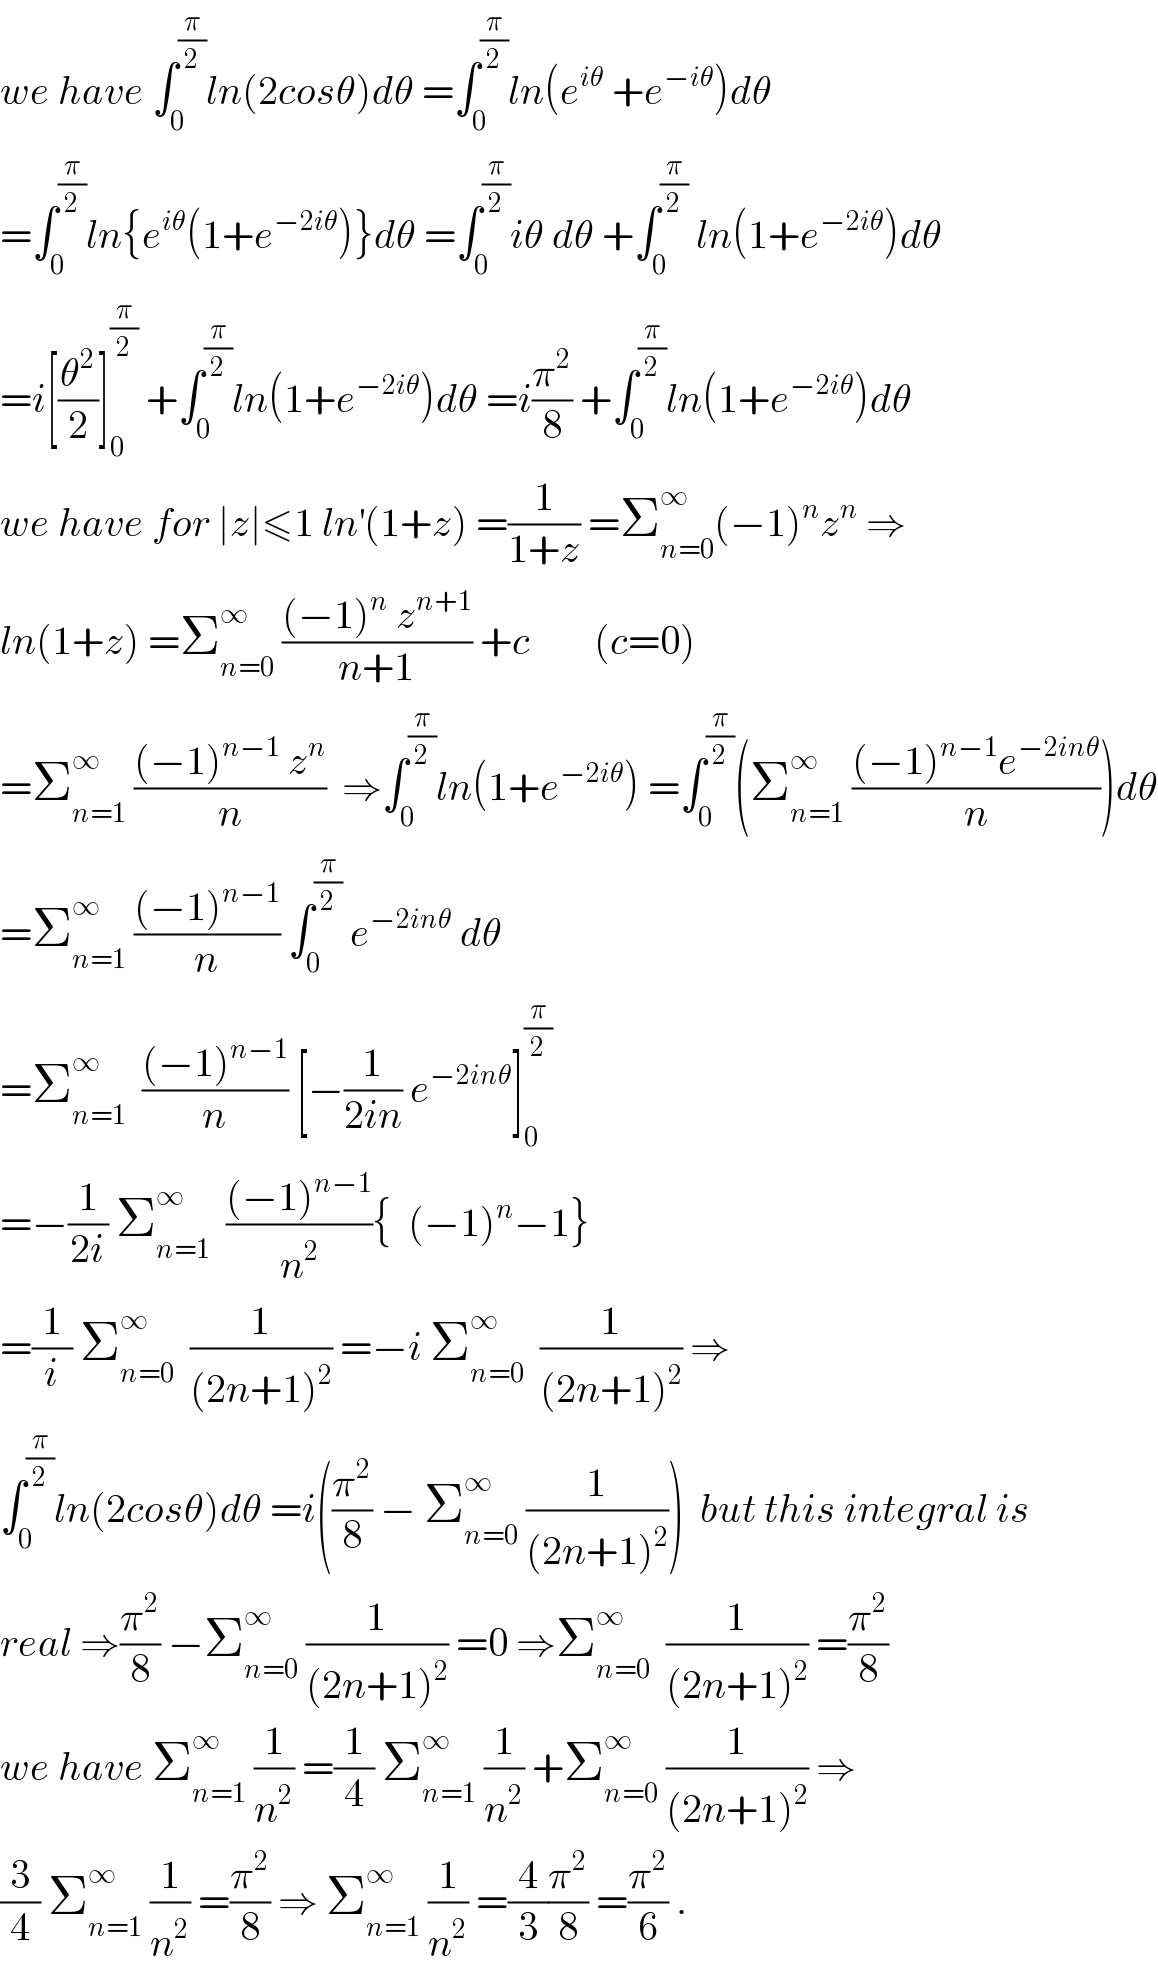 we have ∫_0 ^(π/2) ln(2cosθ)dθ =∫_0 ^(π/2) ln(e^(iθ)  +e^(−iθ) )dθ  =∫_0 ^(π/2) ln{e^(iθ) (1+e^(−2iθ) )}dθ =∫_0 ^(π/2) iθ dθ +∫_0 ^(π/2)  ln(1+e^(−2iθ) )dθ  =i[(θ^2 /2)]_0 ^(π/2)  +∫_0 ^(π/2) ln(1+e^(−2iθ) )dθ =i(π^2 /8) +∫_0 ^(π/2) ln(1+e^(−2iθ) )dθ  we have for ∣z∣≤1 ln^′ (1+z) =(1/(1+z)) =Σ_(n=0) ^∞ (−1)^n z^n  ⇒  ln(1+z) =Σ_(n=0) ^∞  (((−1)^n  z^(n+1) )/(n+1)) +c        (c=0)  =Σ_(n=1) ^∞  (((−1)^(n−1)  z^n )/n)  ⇒∫_0 ^(π/2) ln(1+e^(−2iθ) ) =∫_0 ^(π/2) (Σ_(n=1) ^∞  (((−1)^(n−1) e^(−2inθ) )/n))dθ  =Σ_(n=1) ^∞  (((−1)^(n−1) )/n) ∫_0 ^(π/2)  e^(−2inθ)  dθ  =Σ_(n=1) ^∞   (((−1)^(n−1) )/n) [−(1/(2in)) e^(−2inθ) ]_0 ^(π/2)   =−(1/(2i)) Σ_(n=1) ^∞   (((−1)^(n−1) )/n^2 ){  (−1)^n −1}  =(1/i) Σ_(n=0) ^∞   (1/((2n+1)^2 )) =−i Σ_(n=0) ^∞   (1/((2n+1)^2 )) ⇒  ∫_0 ^(π/2) ln(2cosθ)dθ =i((π^2 /8) − Σ_(n=0) ^∞  (1/((2n+1)^2 )))  but this integral is  real ⇒(π^2 /8) −Σ_(n=0) ^∞  (1/((2n+1)^2 )) =0 ⇒Σ_(n=0) ^∞   (1/((2n+1)^2 )) =(π^2 /8)  we have Σ_(n=1) ^∞  (1/n^2 ) =(1/4) Σ_(n=1) ^∞  (1/n^2 ) +Σ_(n=0) ^∞  (1/((2n+1)^2 )) ⇒  (3/4) Σ_(n=1) ^∞  (1/n^2 ) =(π^2 /8) ⇒ Σ_(n=1) ^∞  (1/n^2 ) =(4/3)(π^2 /8) =(π^2 /6) .  